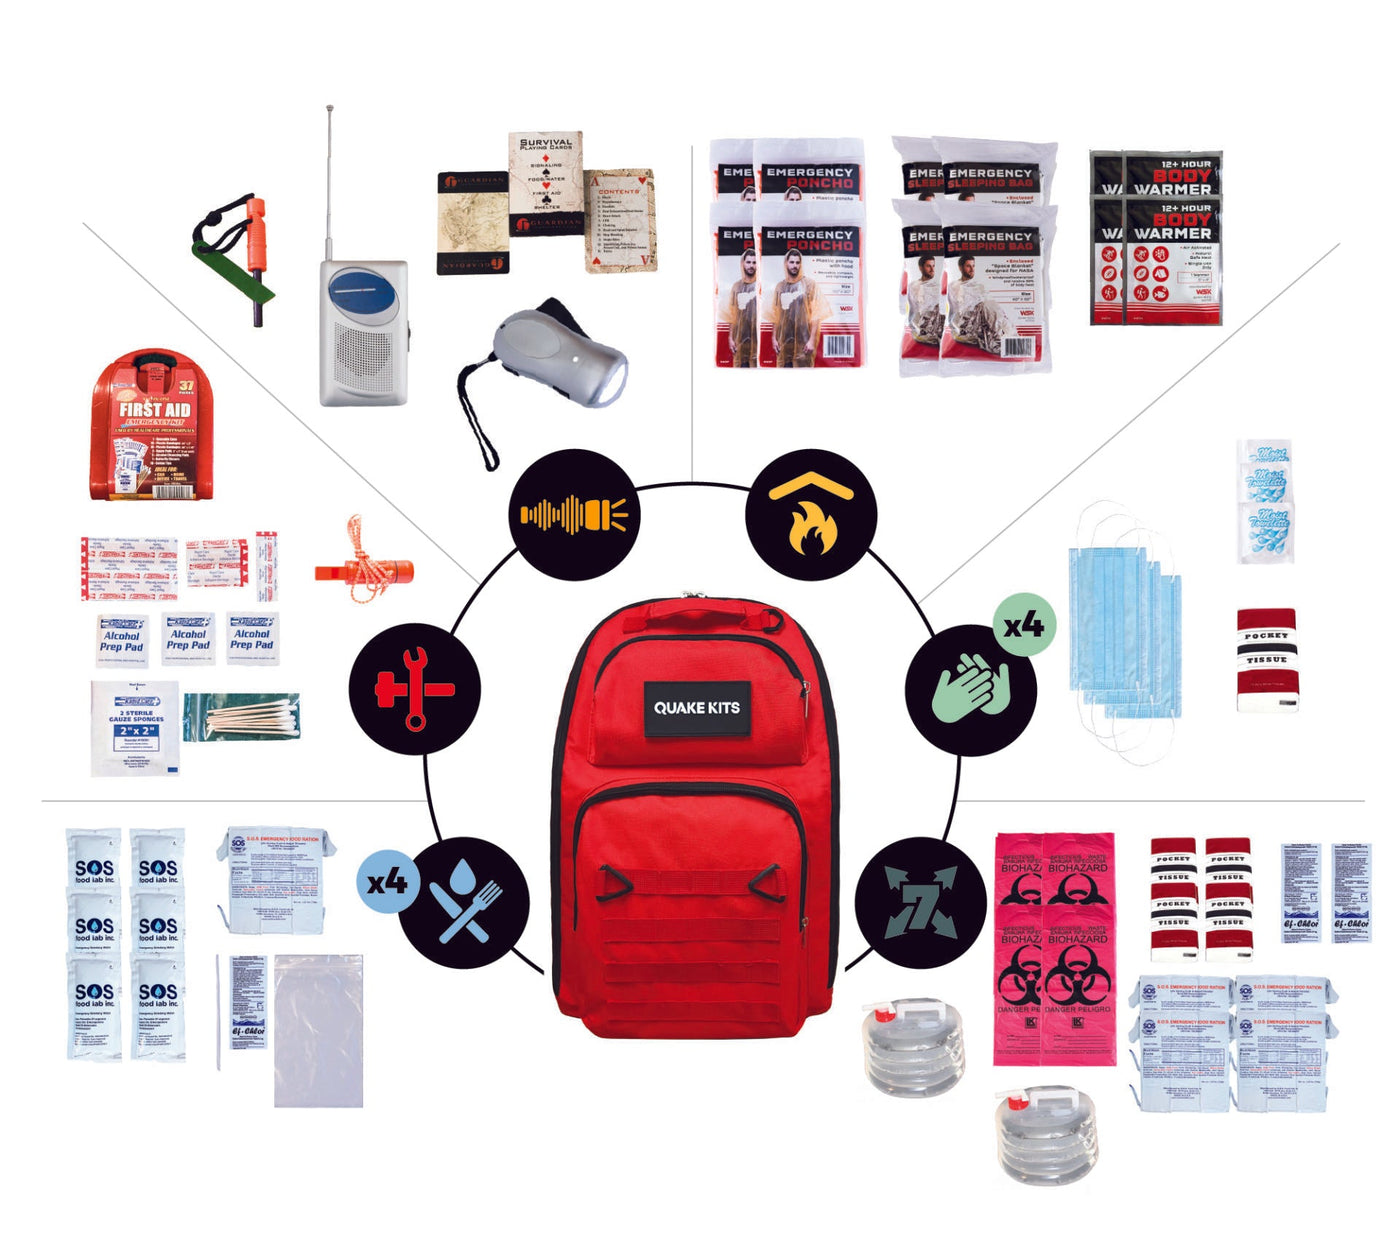 Reasonably Prepared Emergency Kit - 4 Person / 1 Week